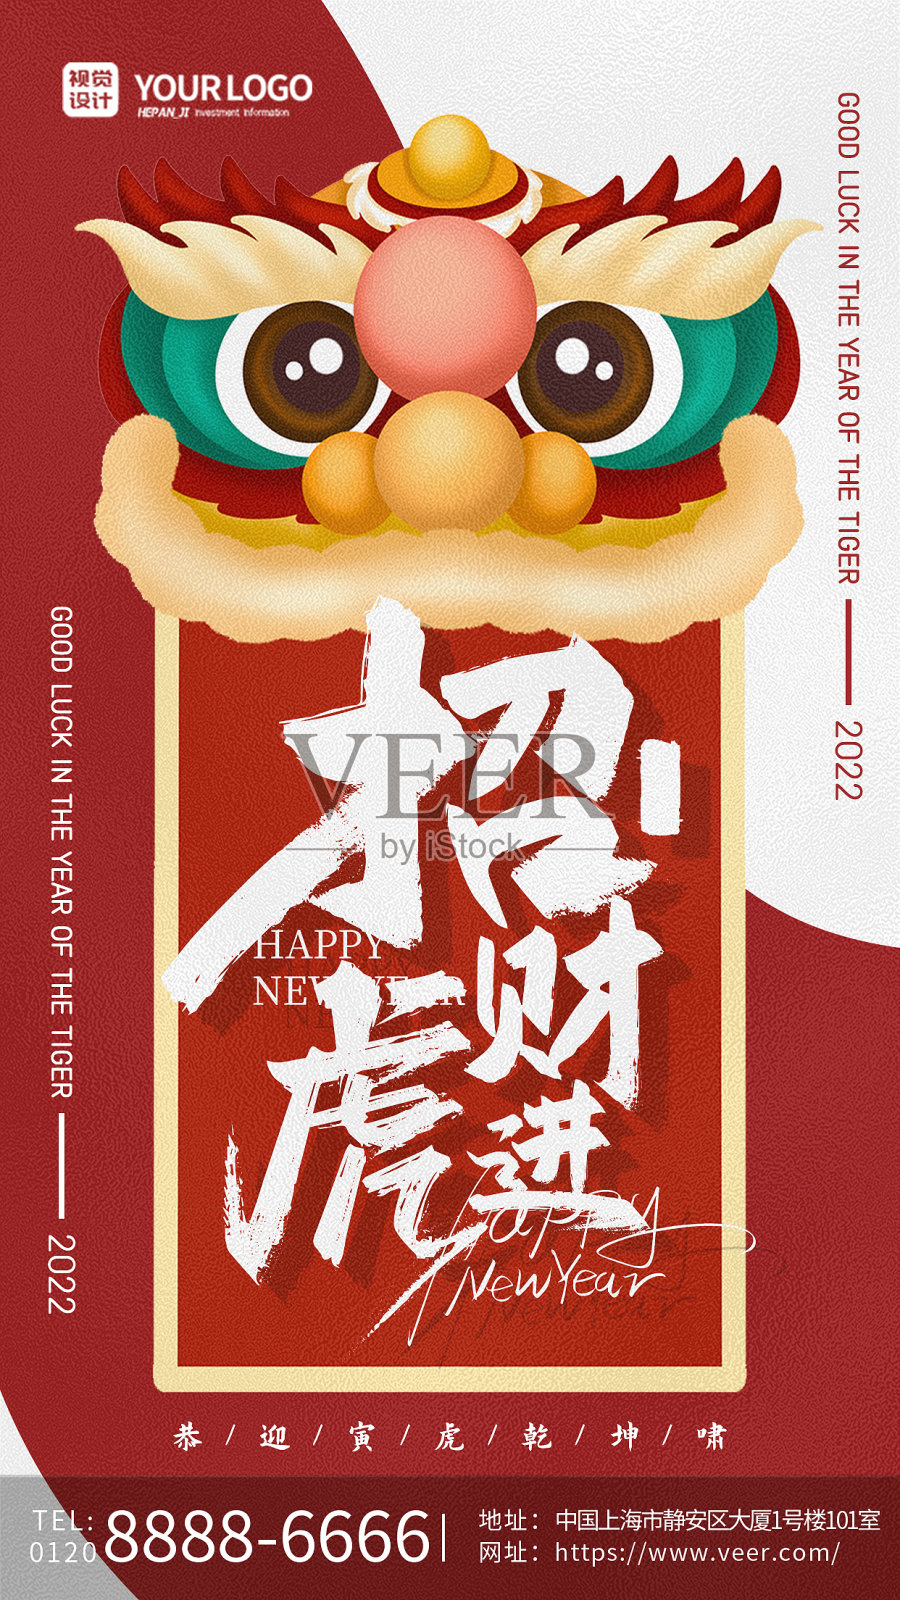 红色卡通狮头喜庆创意招财虎进虎年春节手机海报设计模板素材